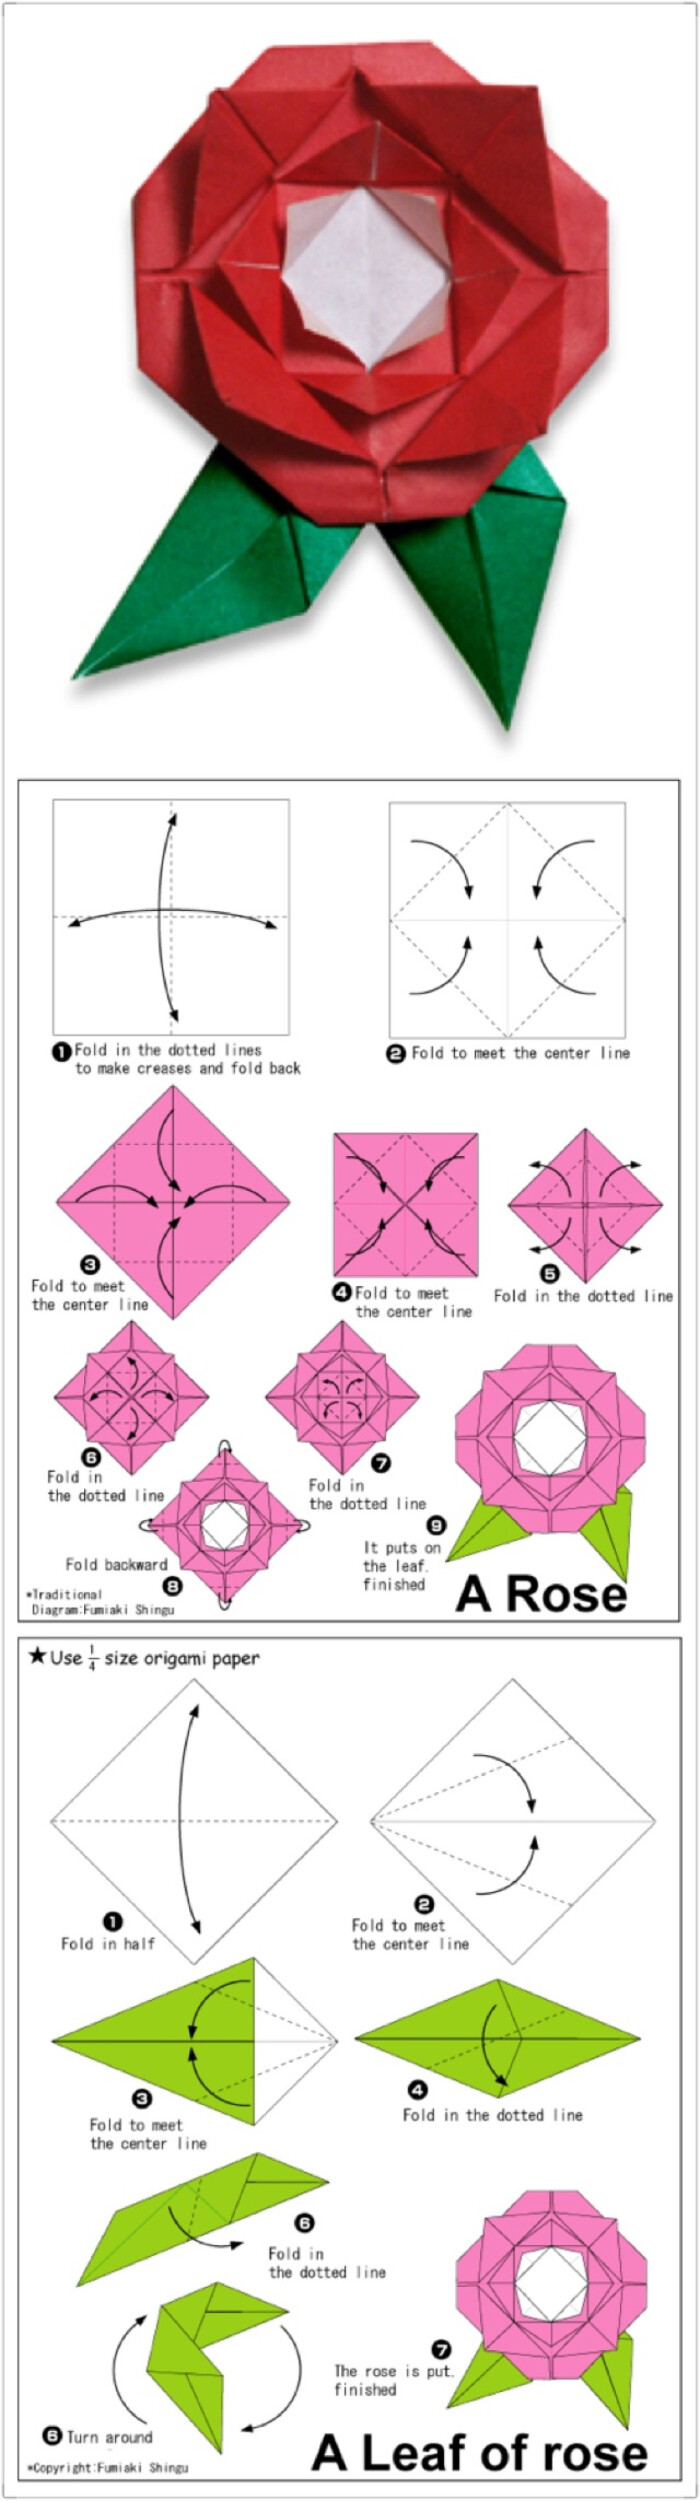 卷心玫瑰花折法步骤图片